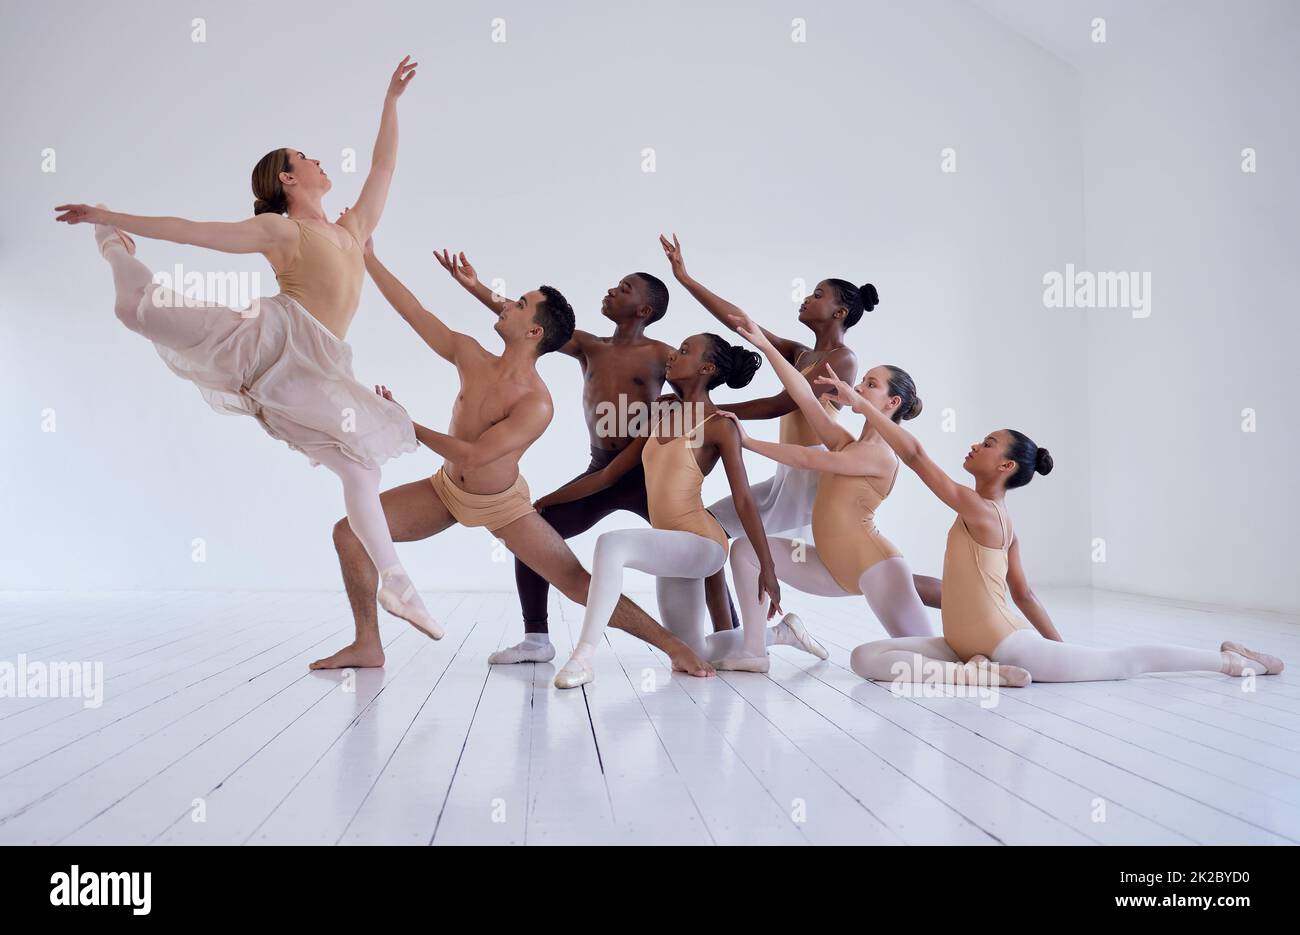 Contemporary dance Stock Photos, Royalty Free Contemporary dance Images |  Depositphotos